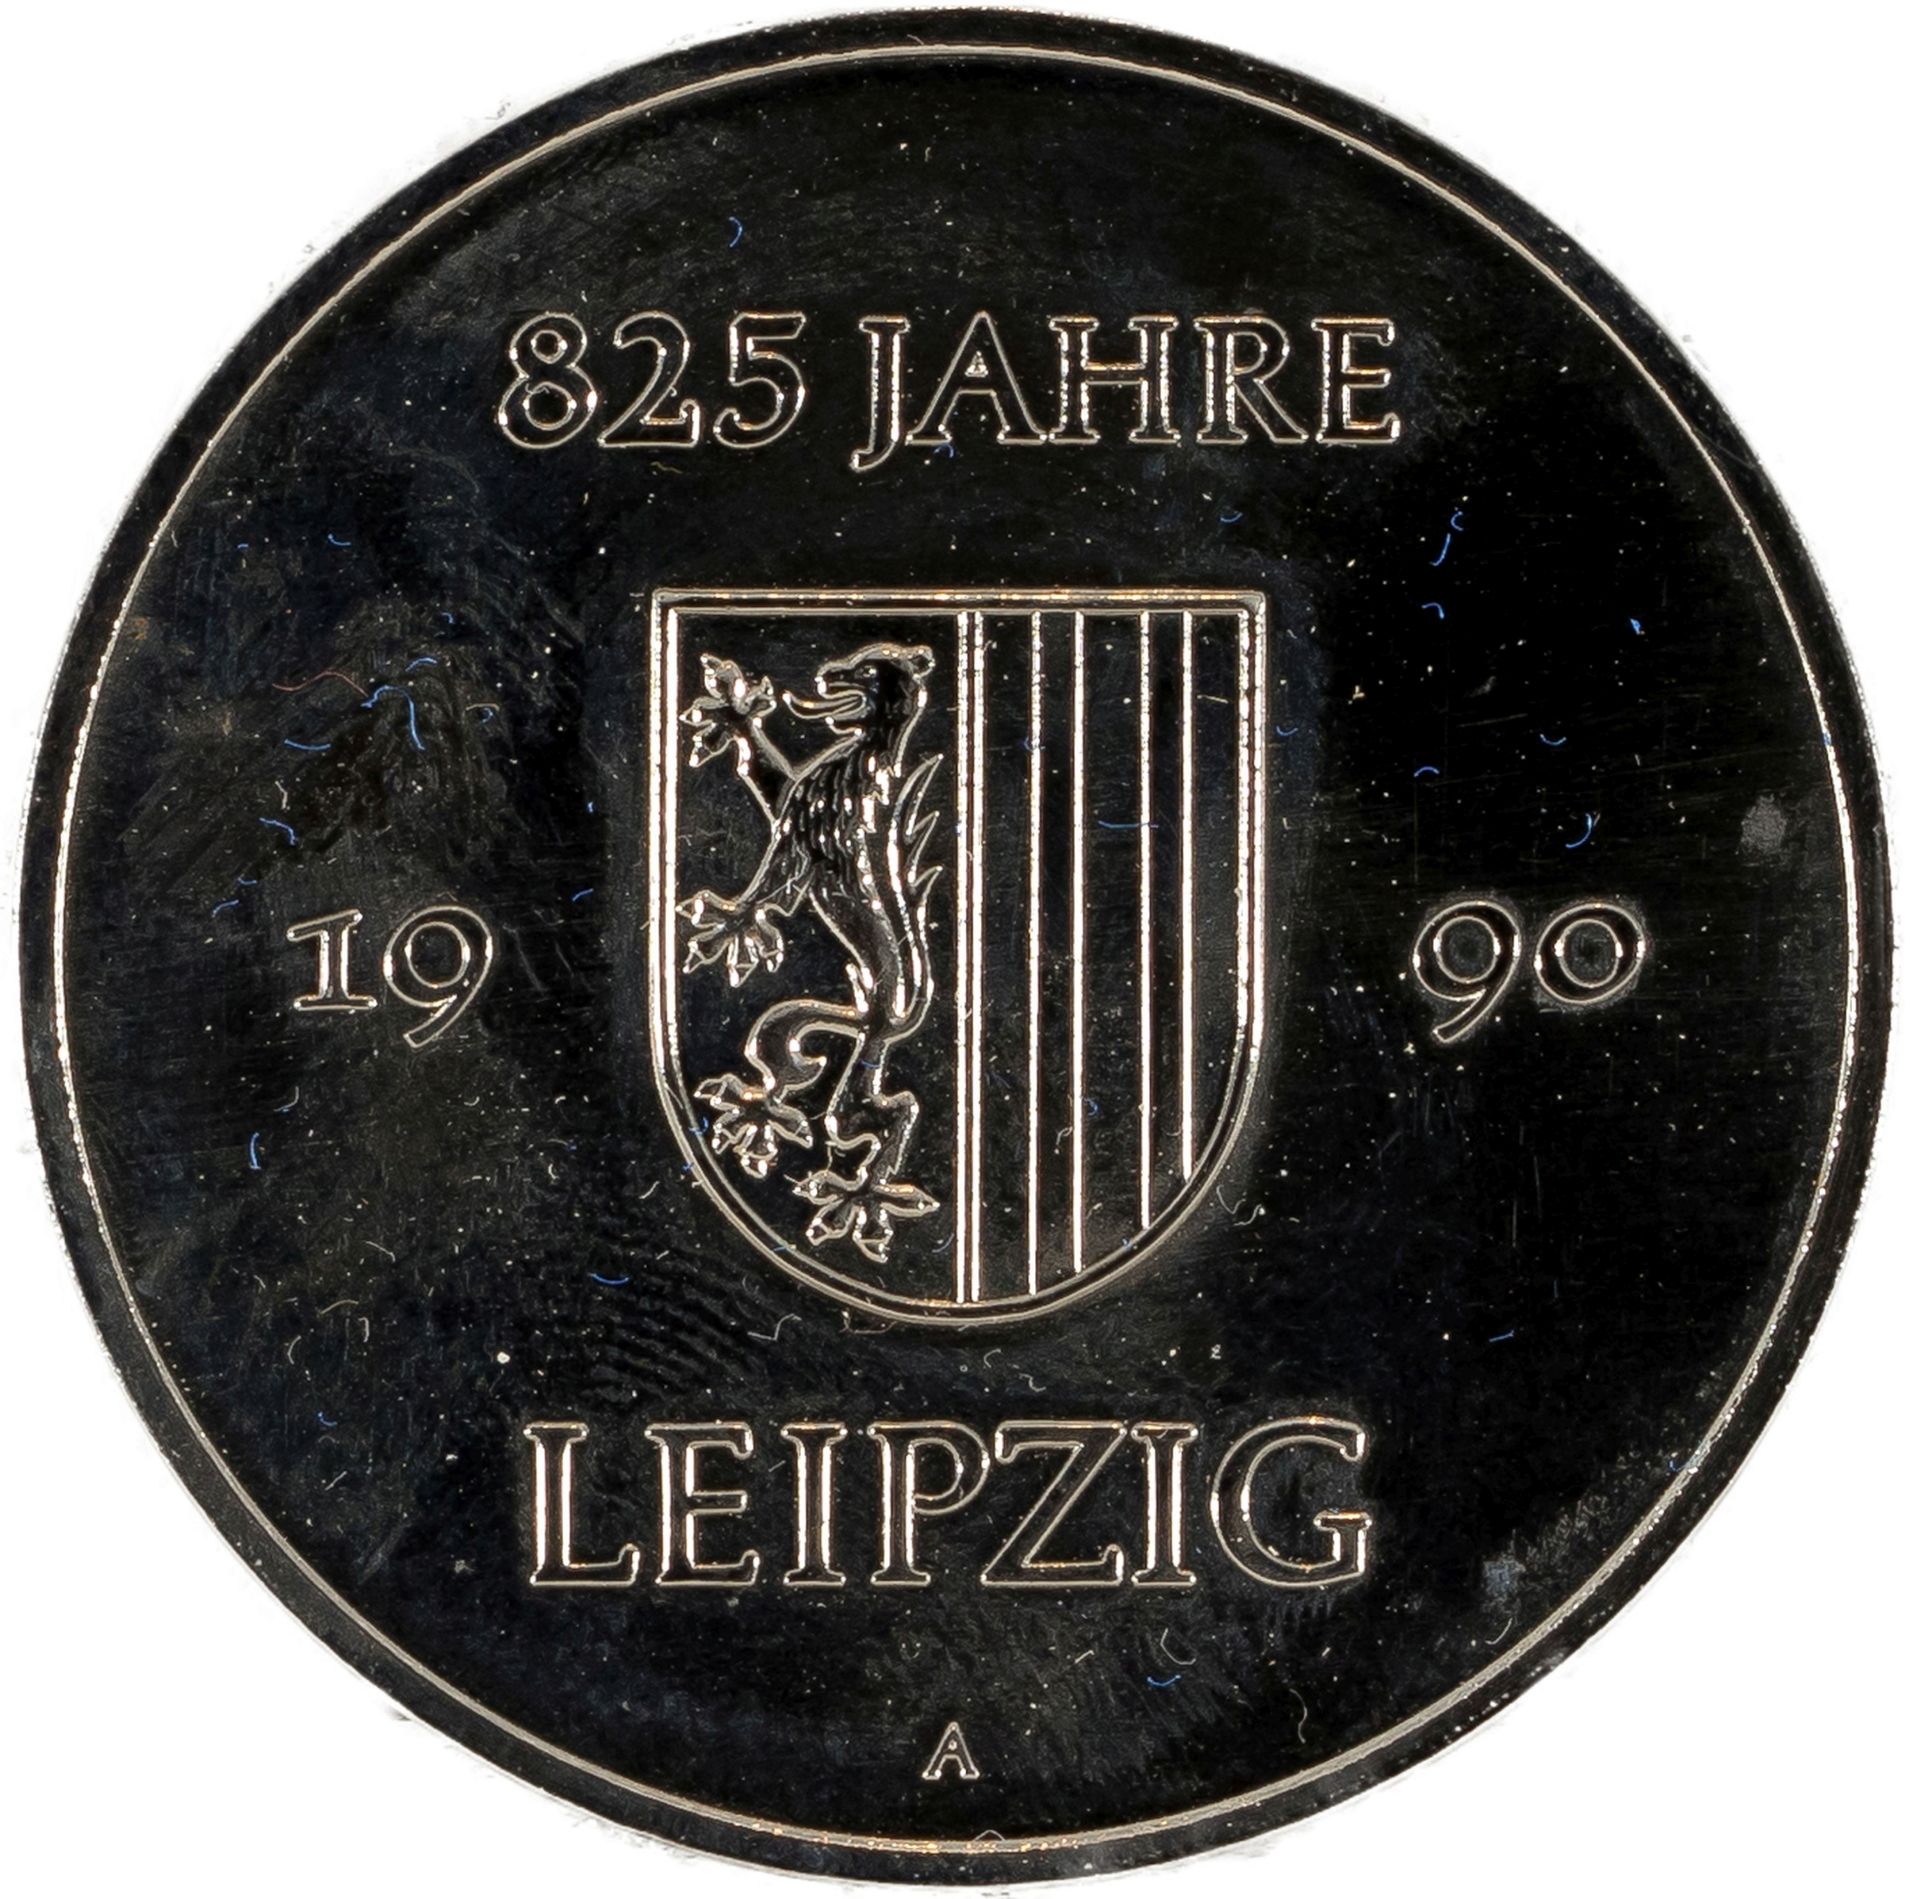 Konvolut von 3 Silbermedaillen zu "825 Jahre Leipzig" - Image 7 of 7